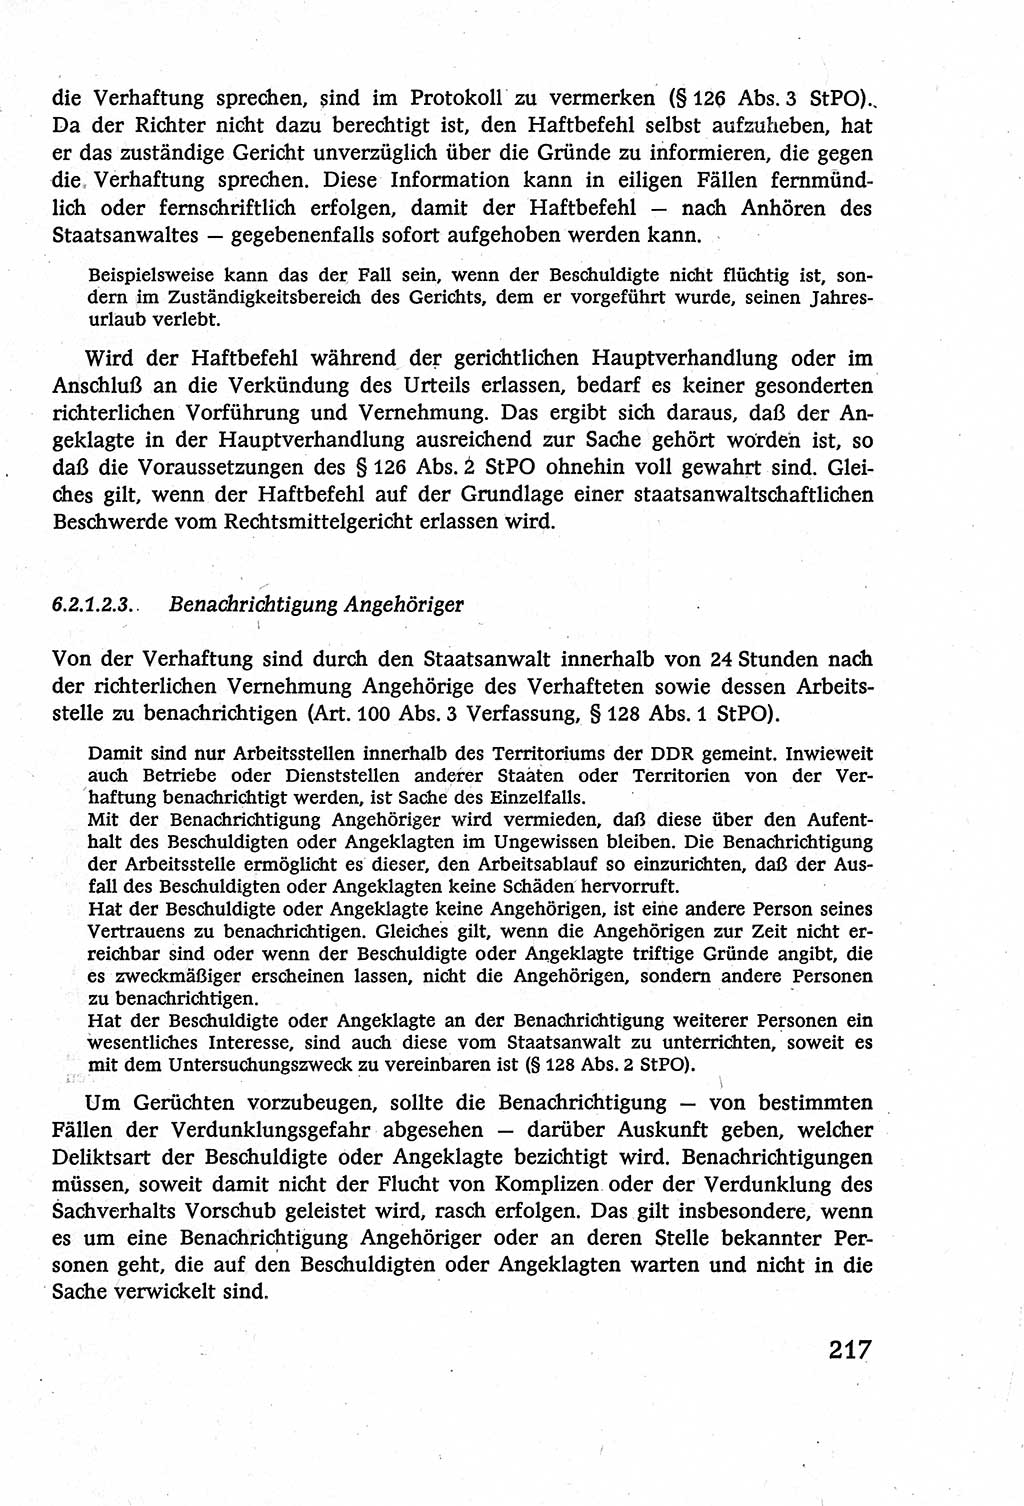 Strafverfahrensrecht [Deutsche Demokratische Republik (DDR)], Lehrbuch 1977, Seite 217 (Strafverf.-R. DDR Lb. 1977, S. 217)